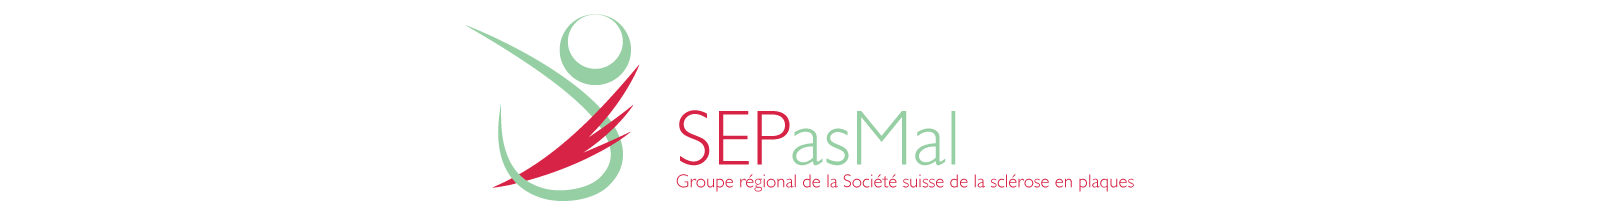 Logo SEPasMal | Groupe régional de la Société suisse de la sclérose en plaques | Nyon et région